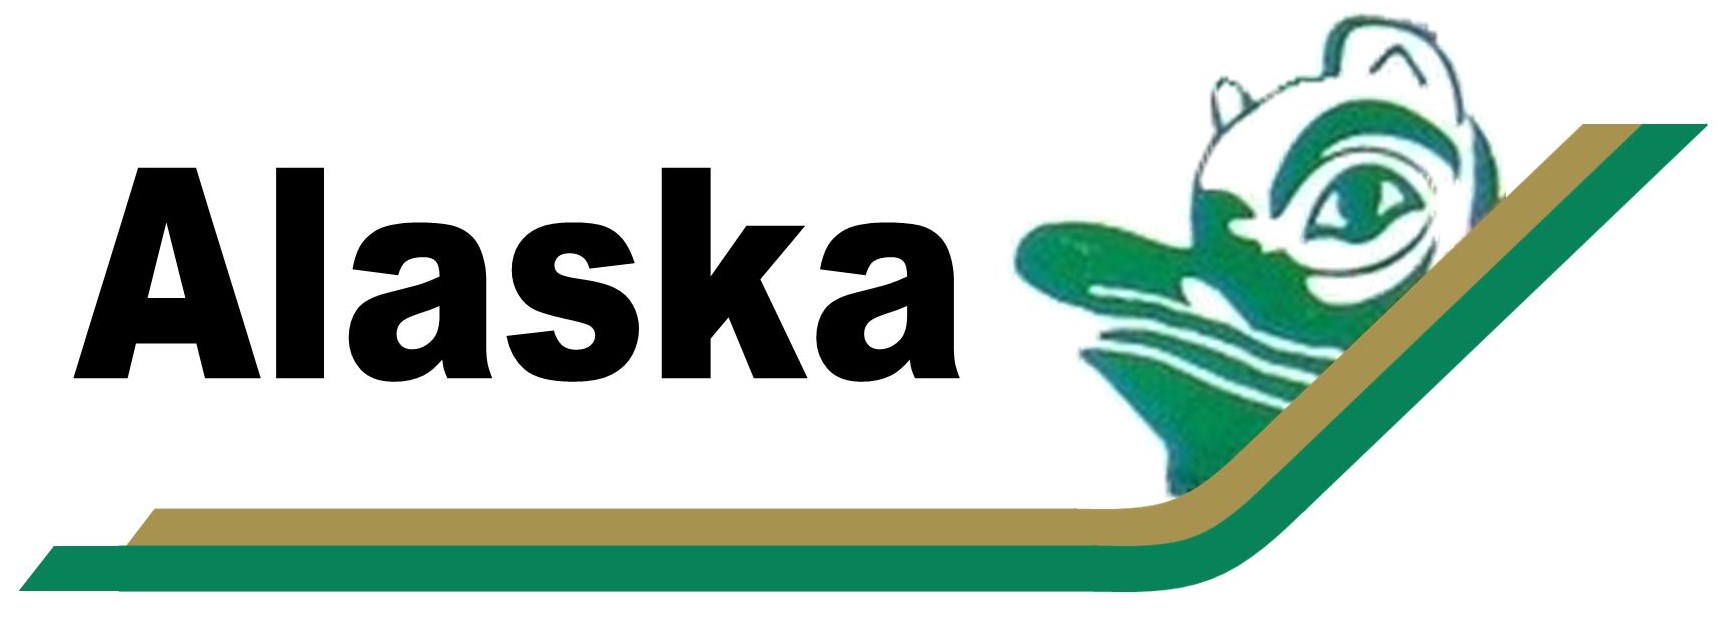 Alaska Airlines
Keywords: Alaska Airlines - Totem Pole